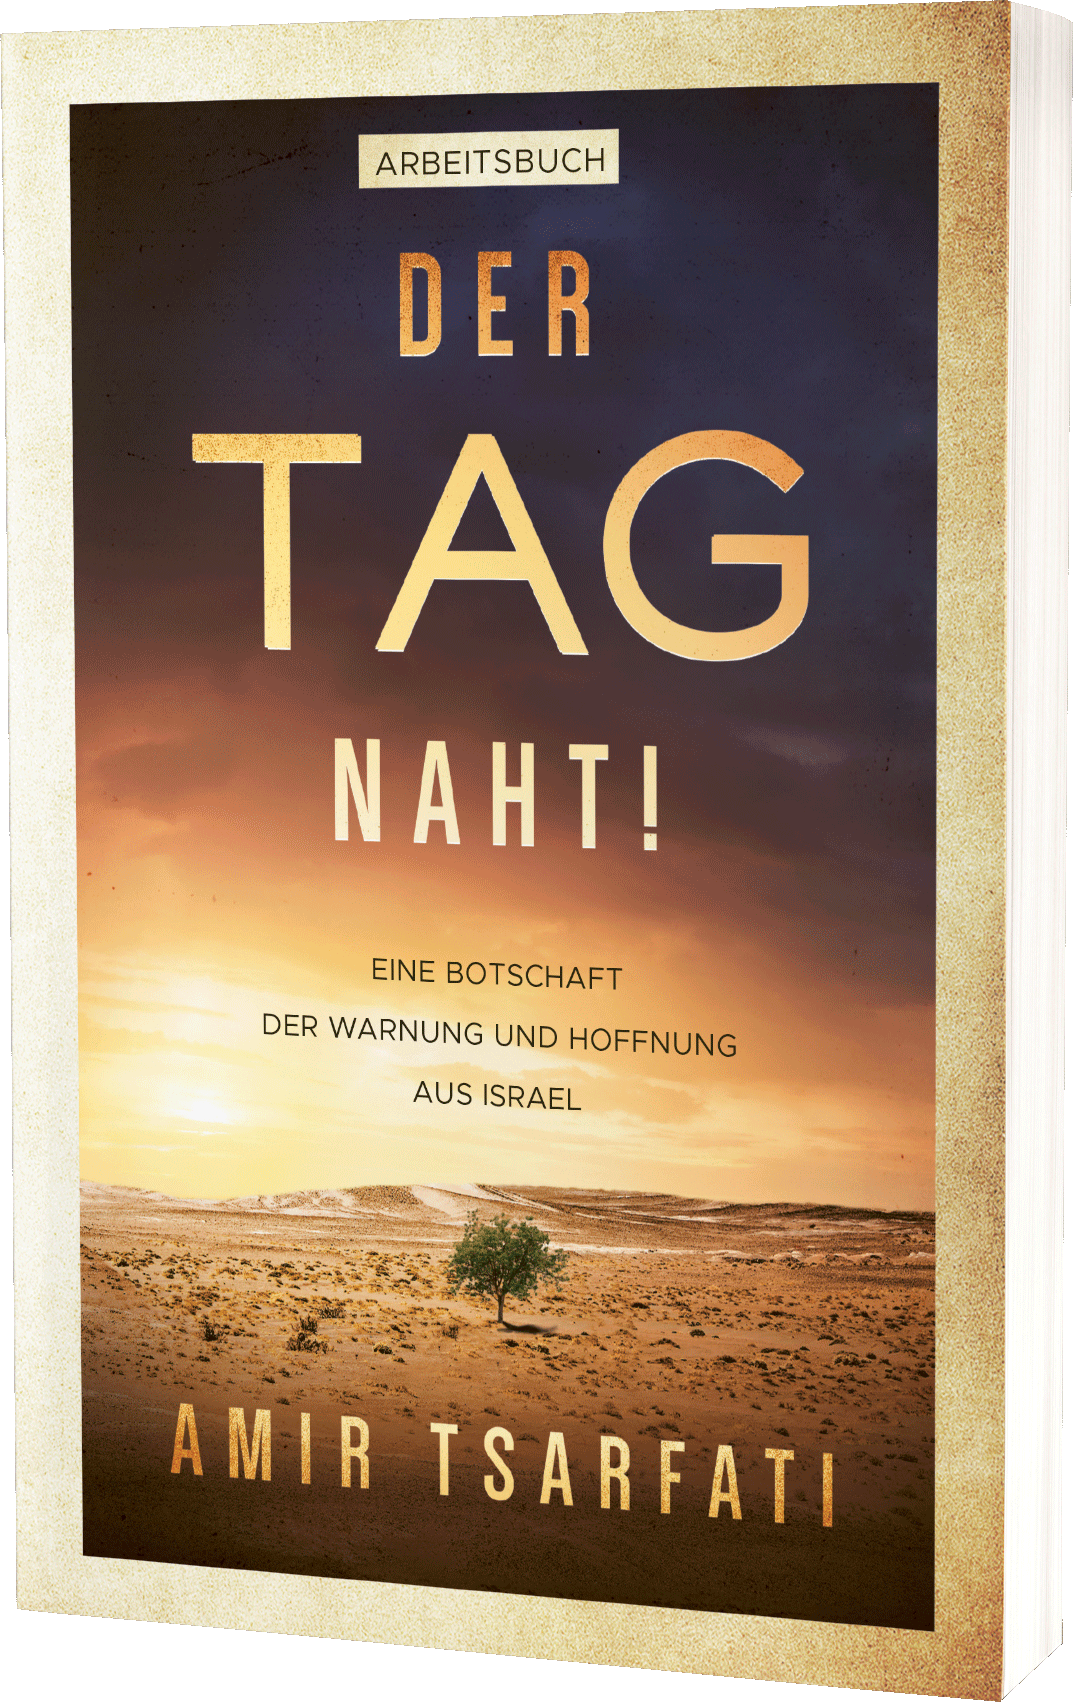 Der Tag naht! (Arbeitsbuch) - Eine Botschaft der Warnung und Hoffnung aus Israel